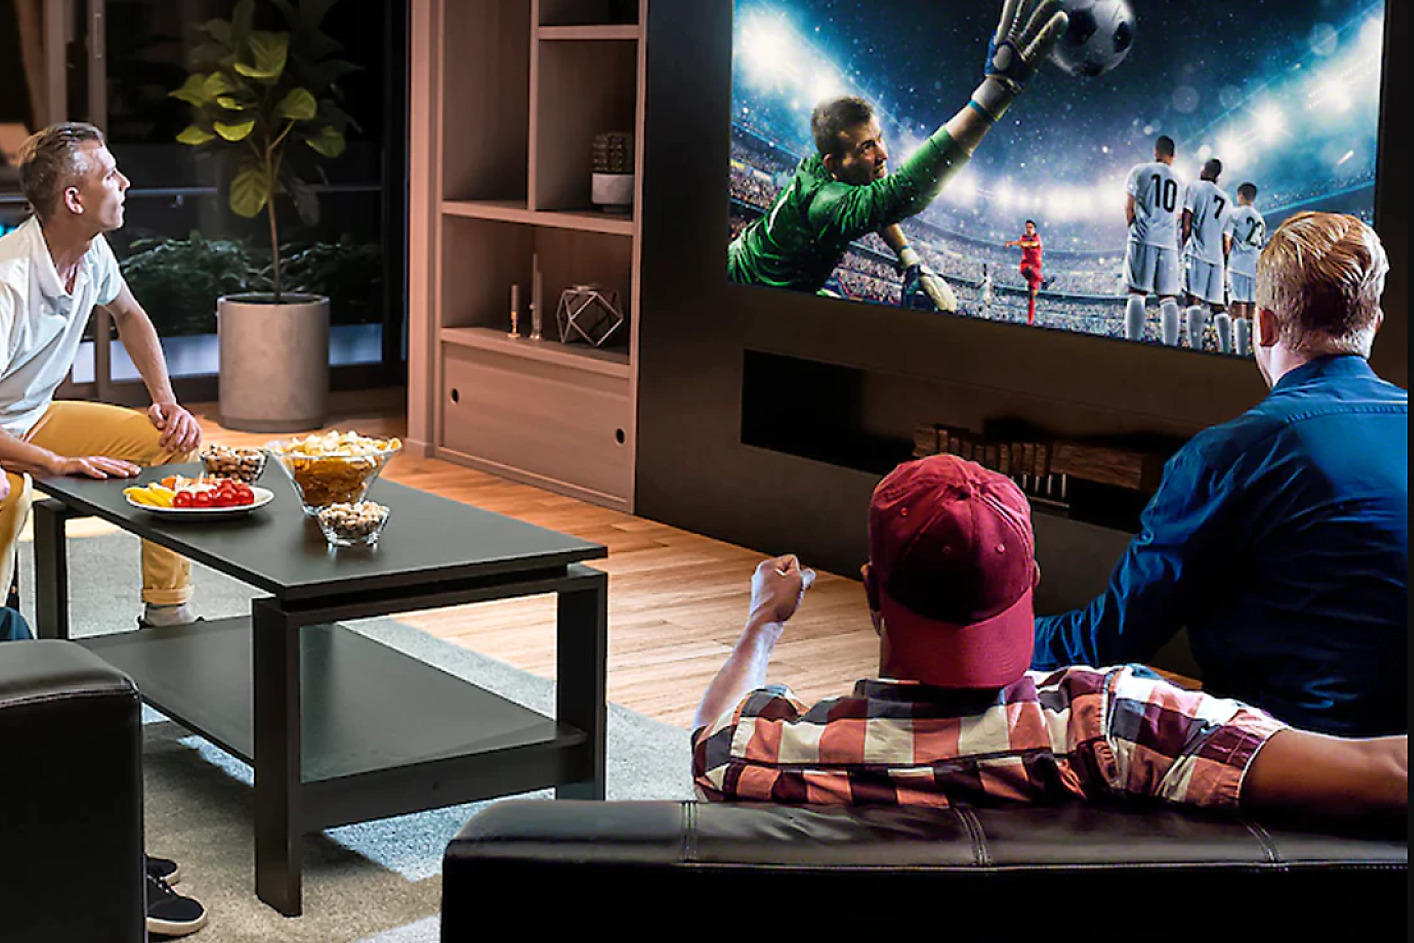 Tres personas en una sala de estar observan el televisor, que muestra un arquero dando un salto para atrapar la pelota.